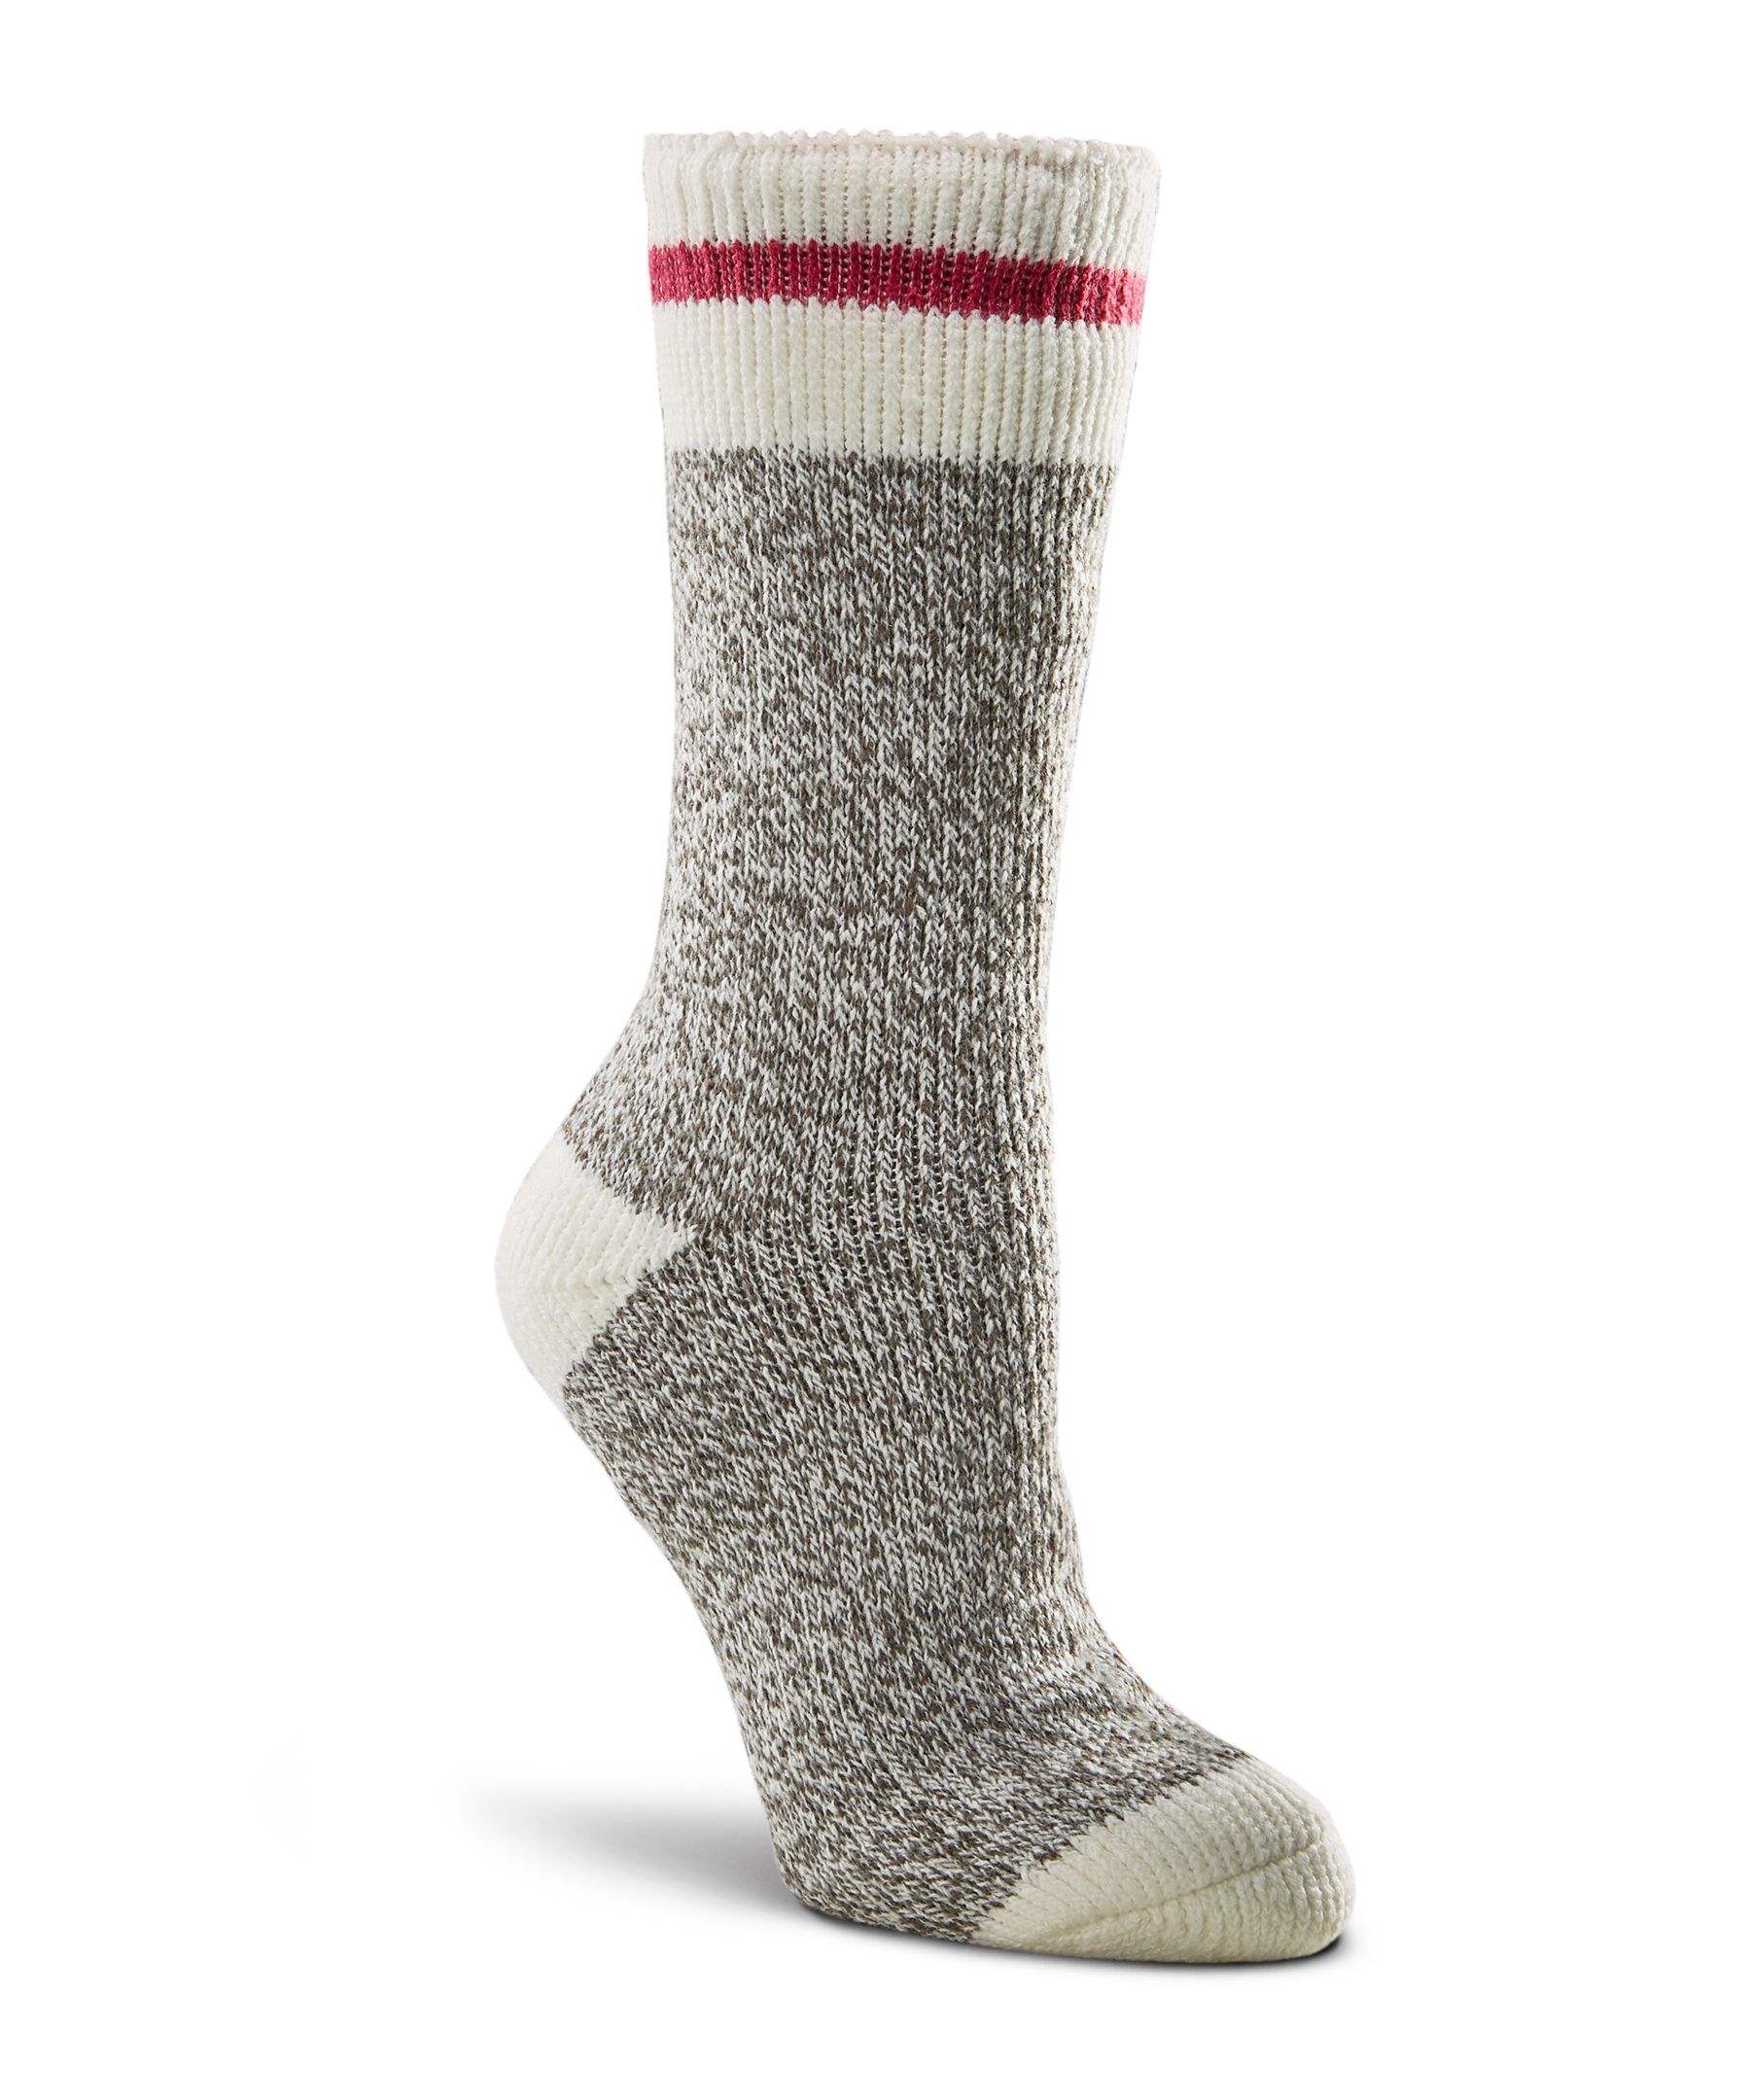 WindRiver Men's T-Max Heat Anti-Skid Socks